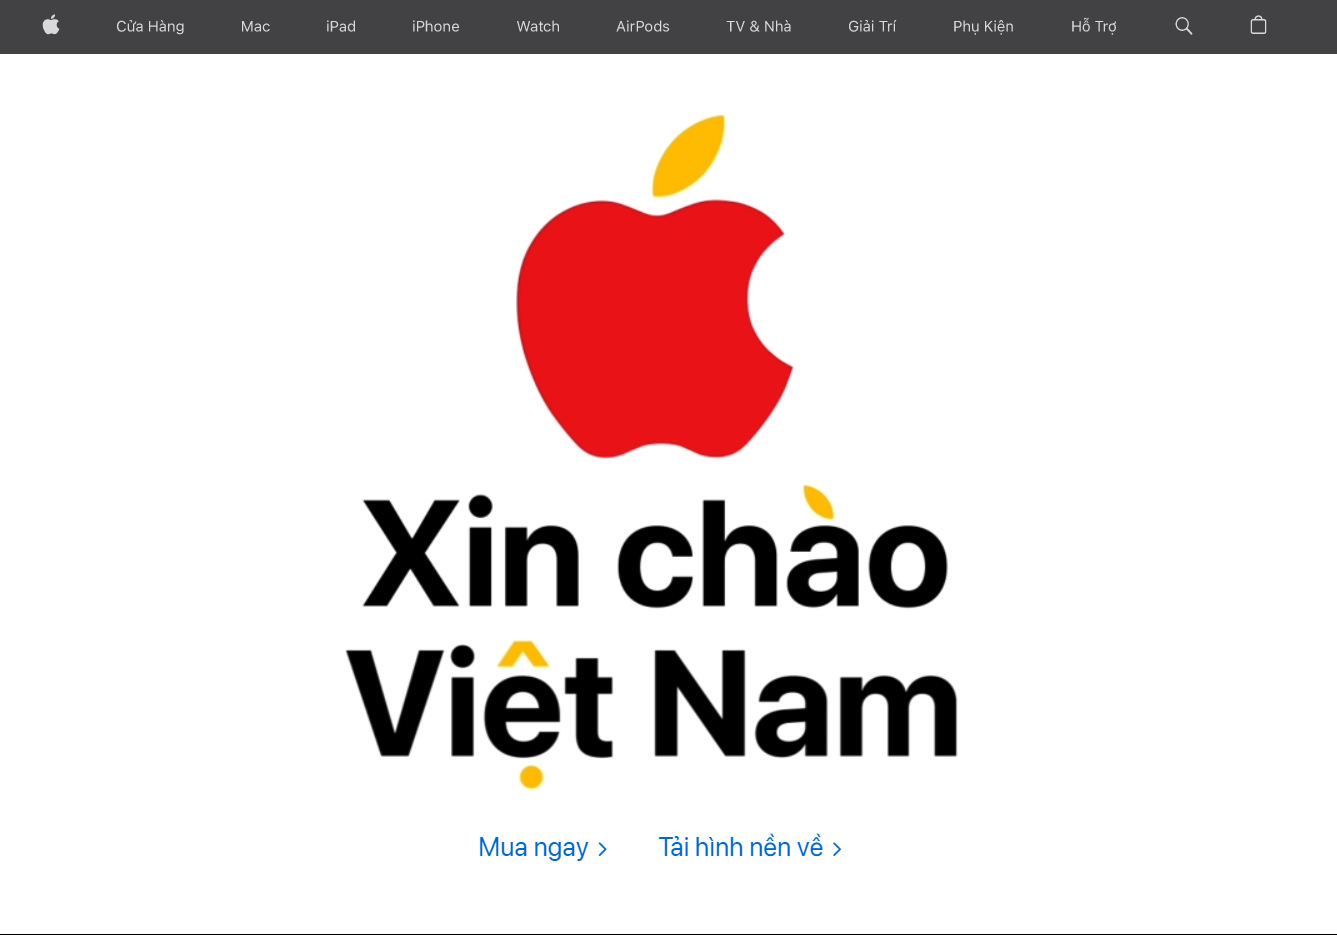 苹果越南 Apple Store 在线商店正式上线